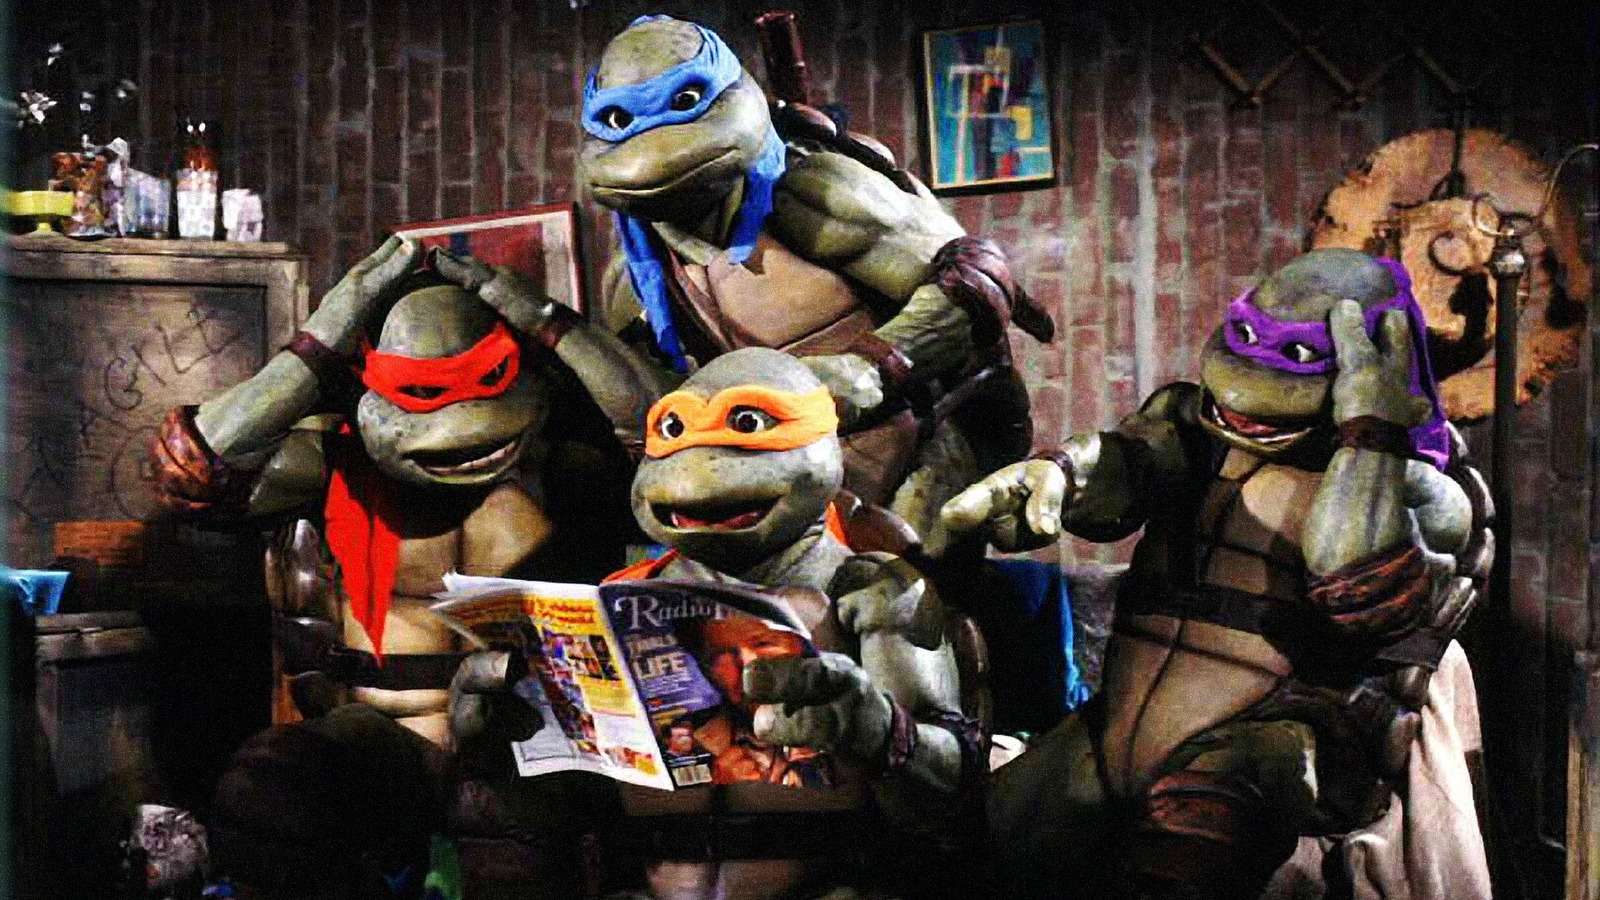 ninja turtles movie 2022 shredder